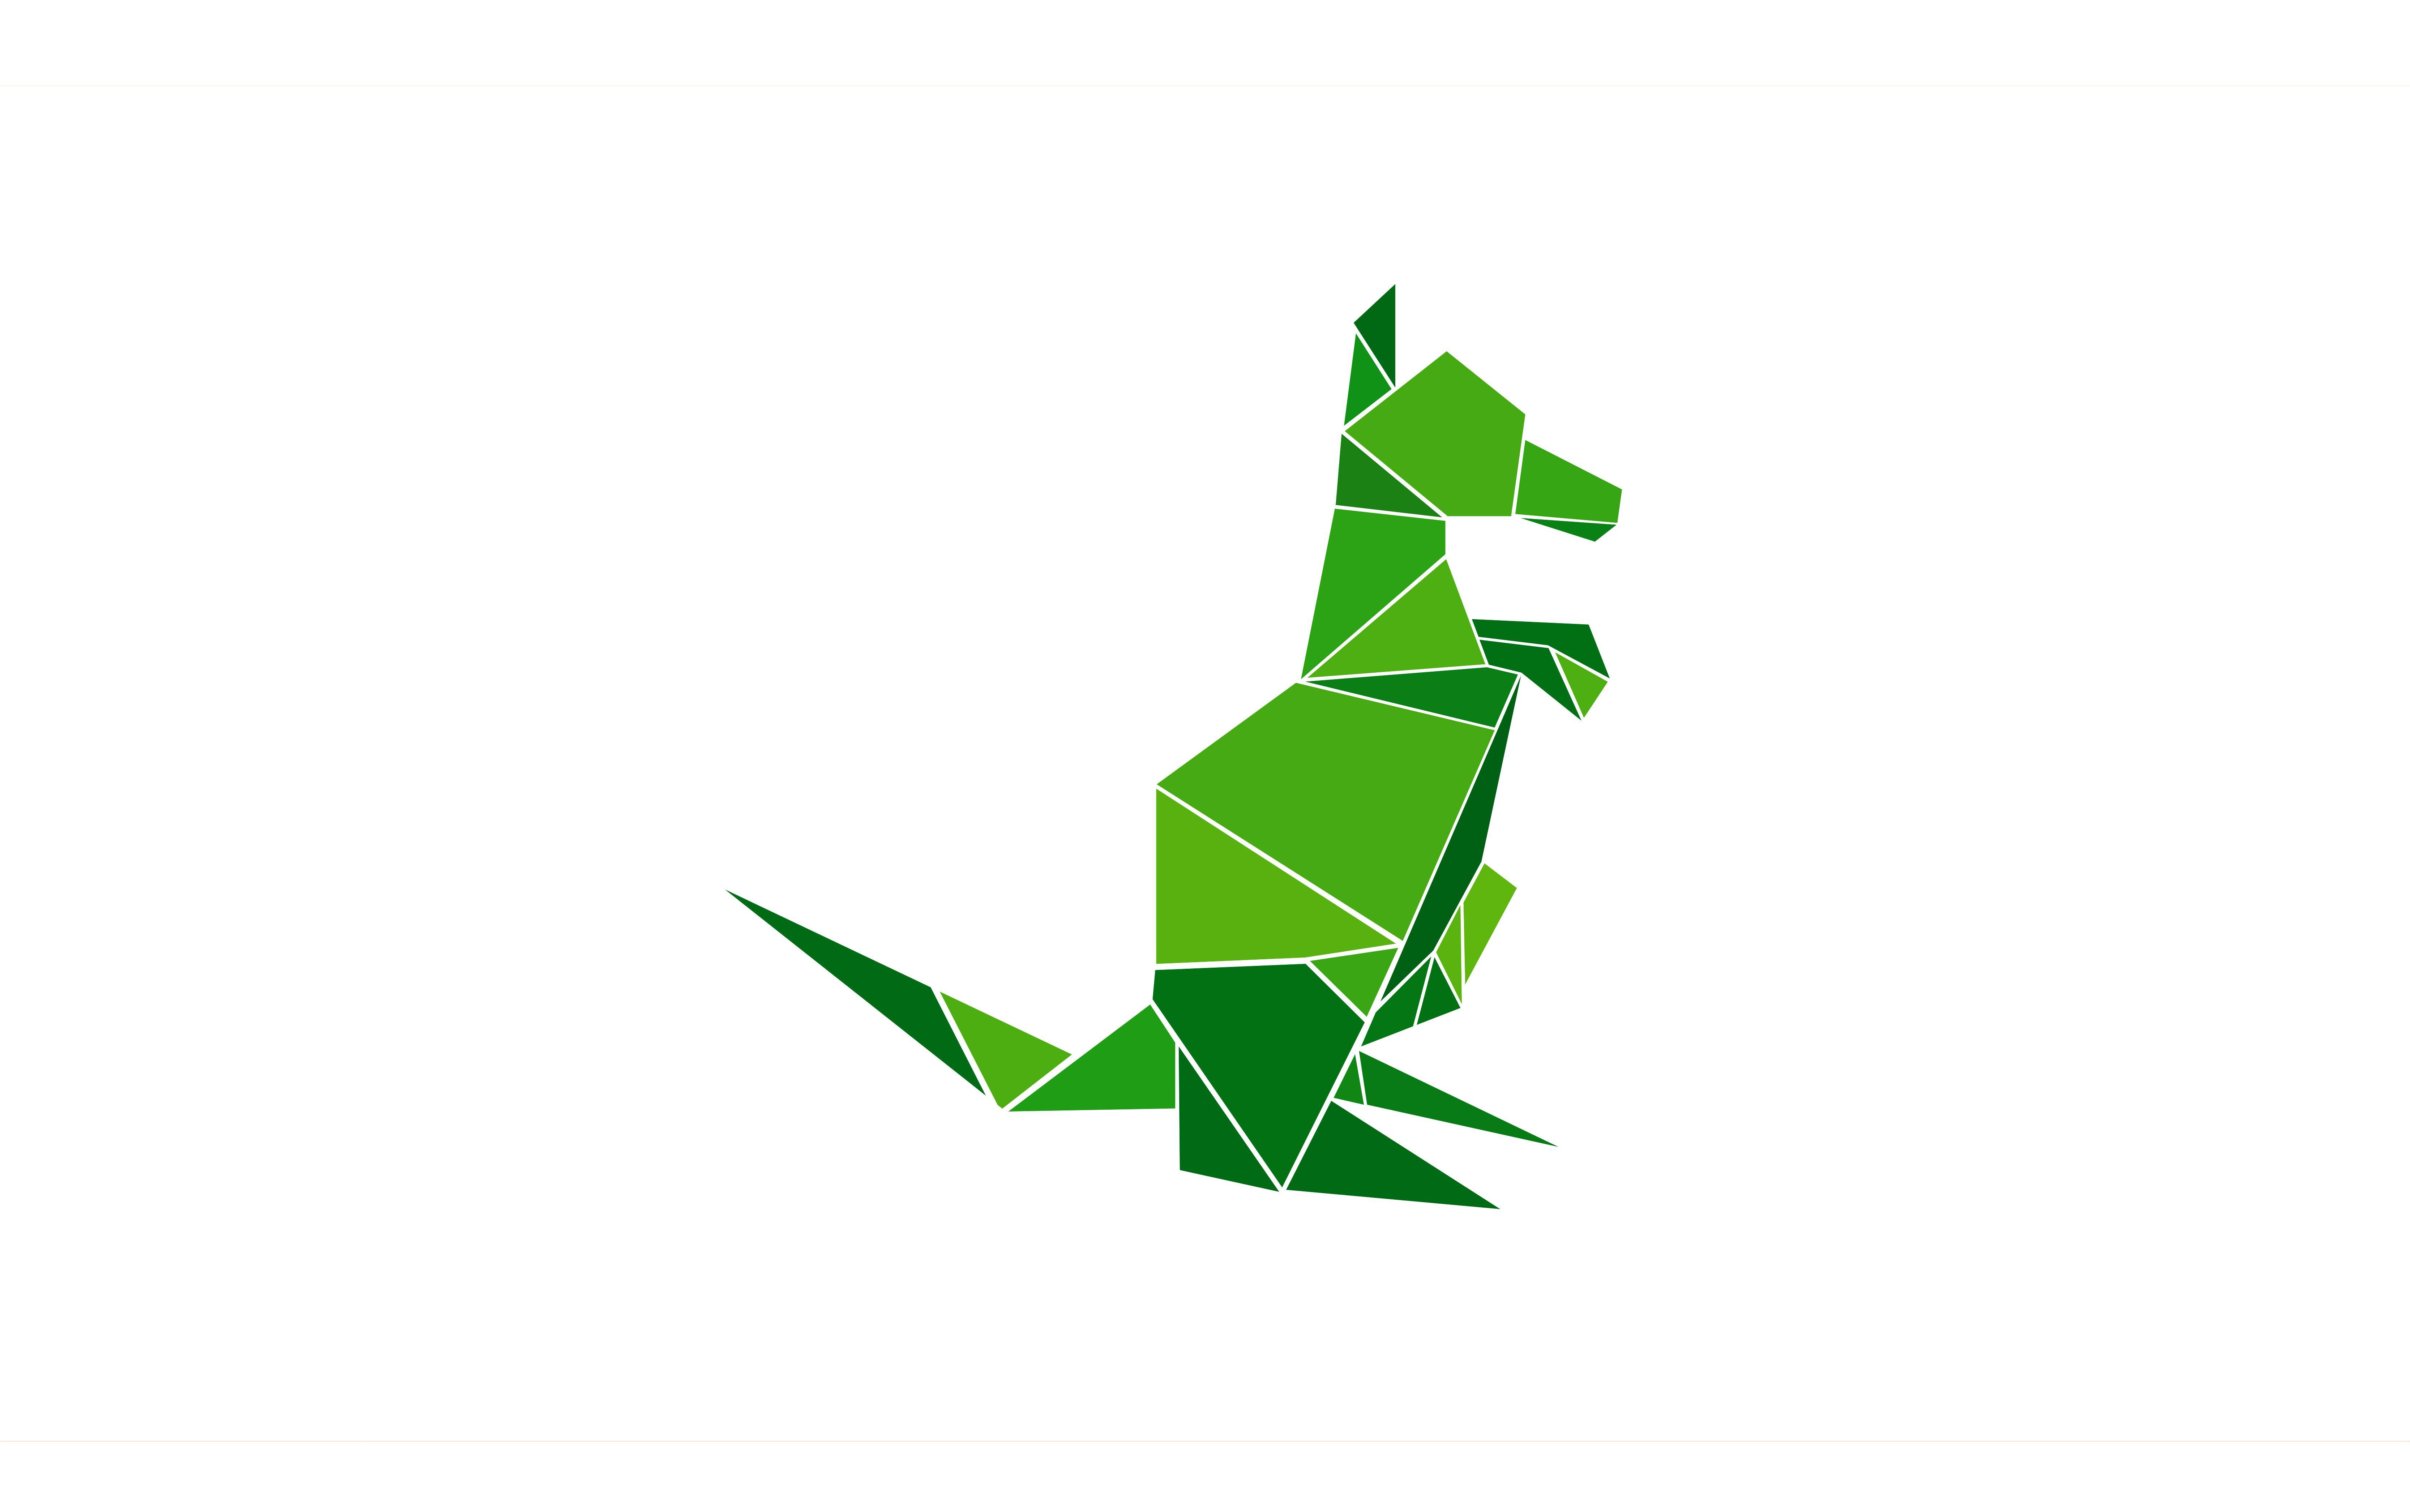 Green Kangaroo Logo - OriGuru Logo #Origami #Design #Branding #Green #Kangaroo | Logos ...